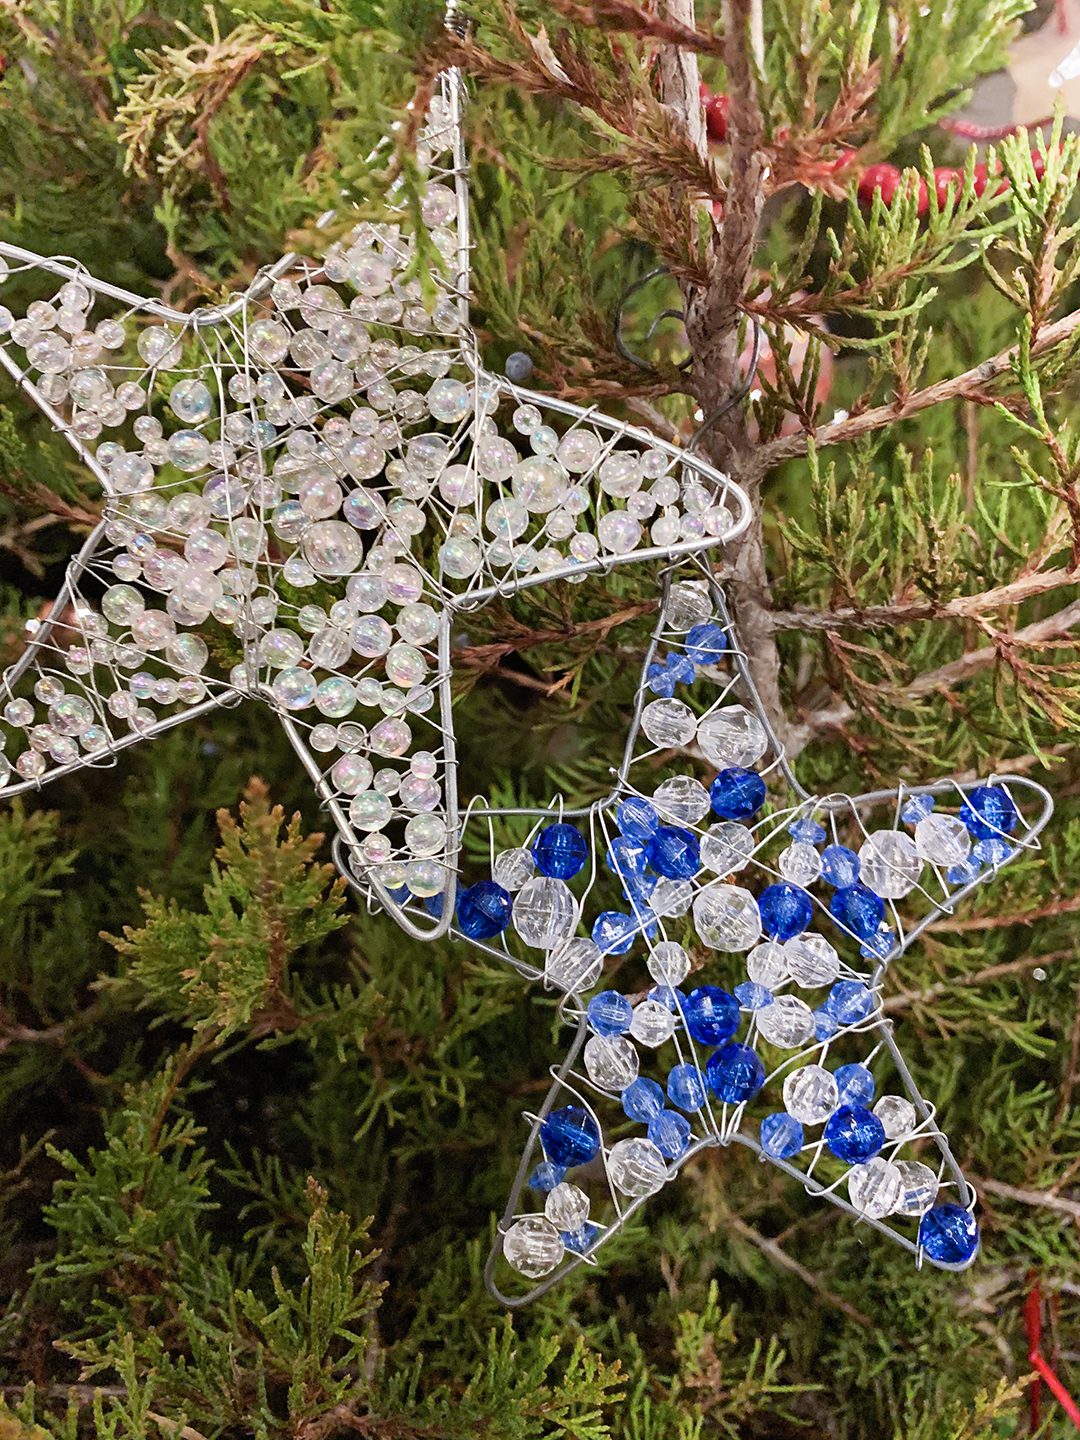 Easy DIY String Star Ornaments Tutorial